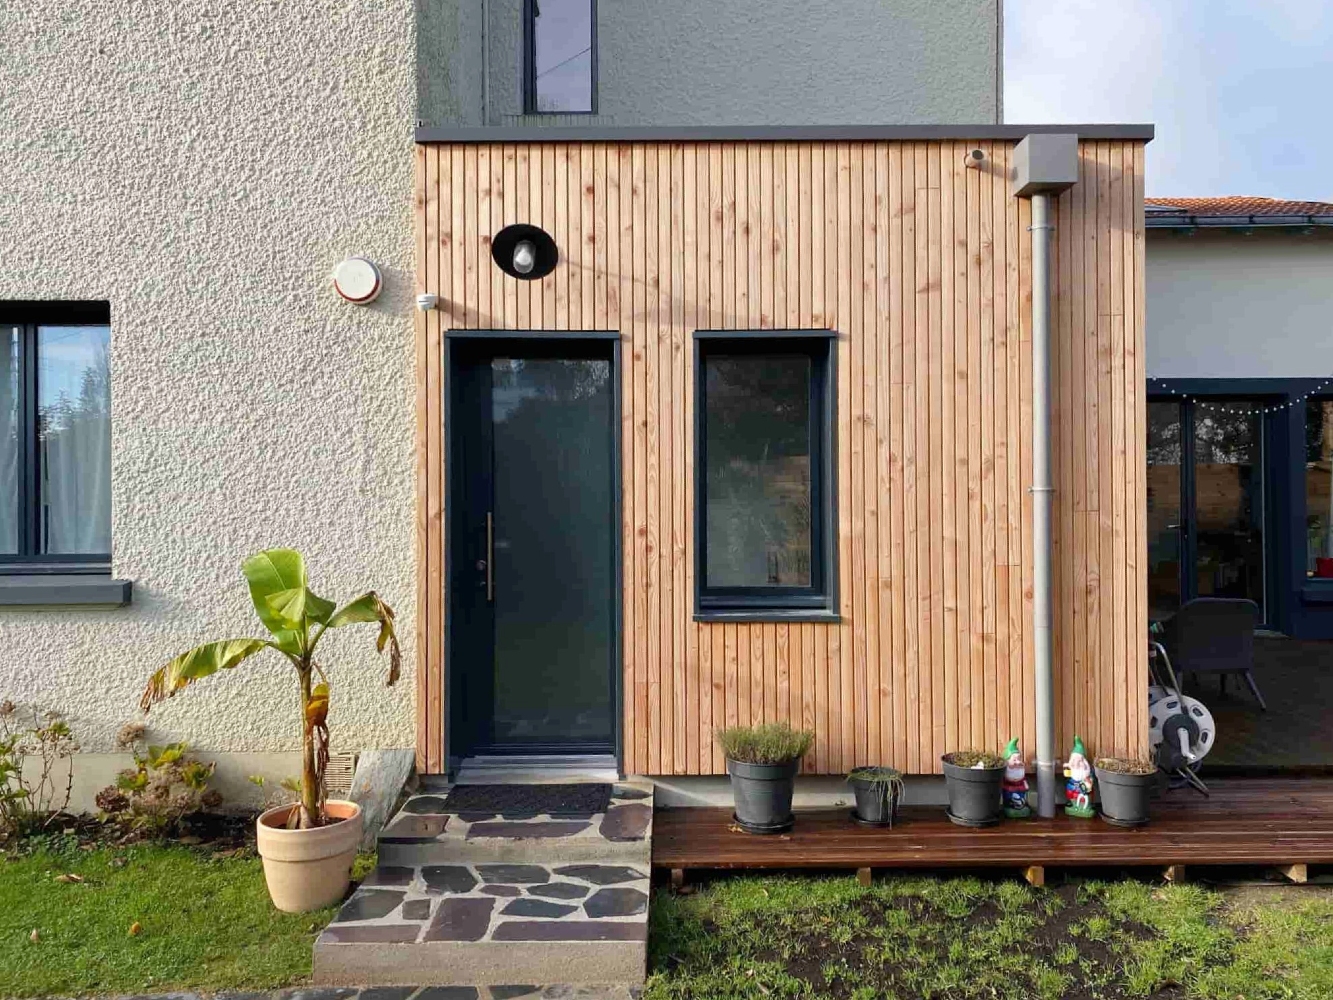 Construction de 2 extensions bois sur une maison moderne à Nantes (44) - Vue 3